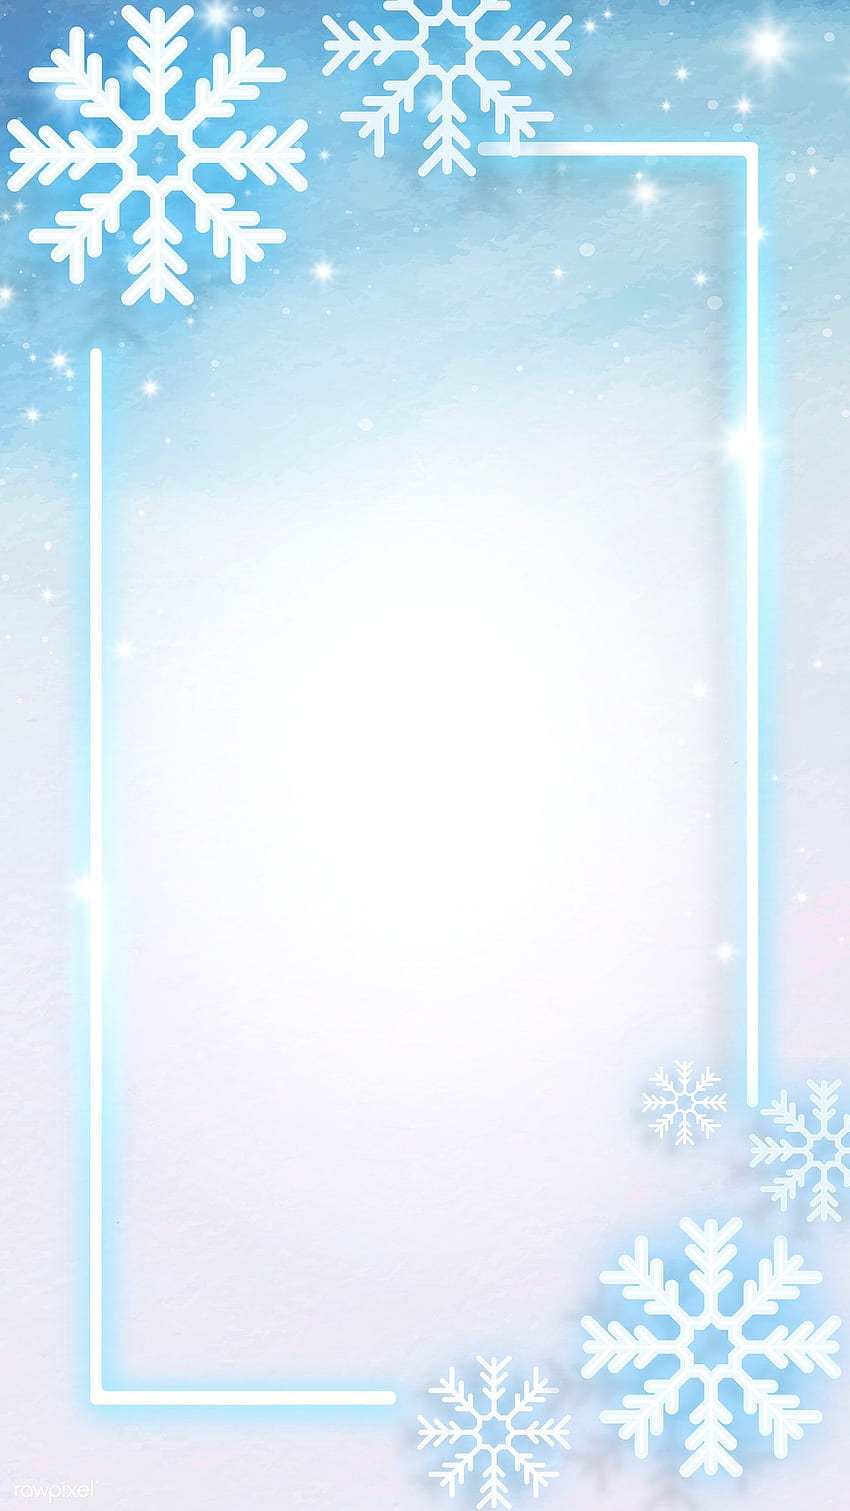 雪片で飾られた青いネオン フレームのプレミアム ベクトル。 スノーフレーク、クリスマスフォン、スノーフレークデコレーション HD電話の壁紙